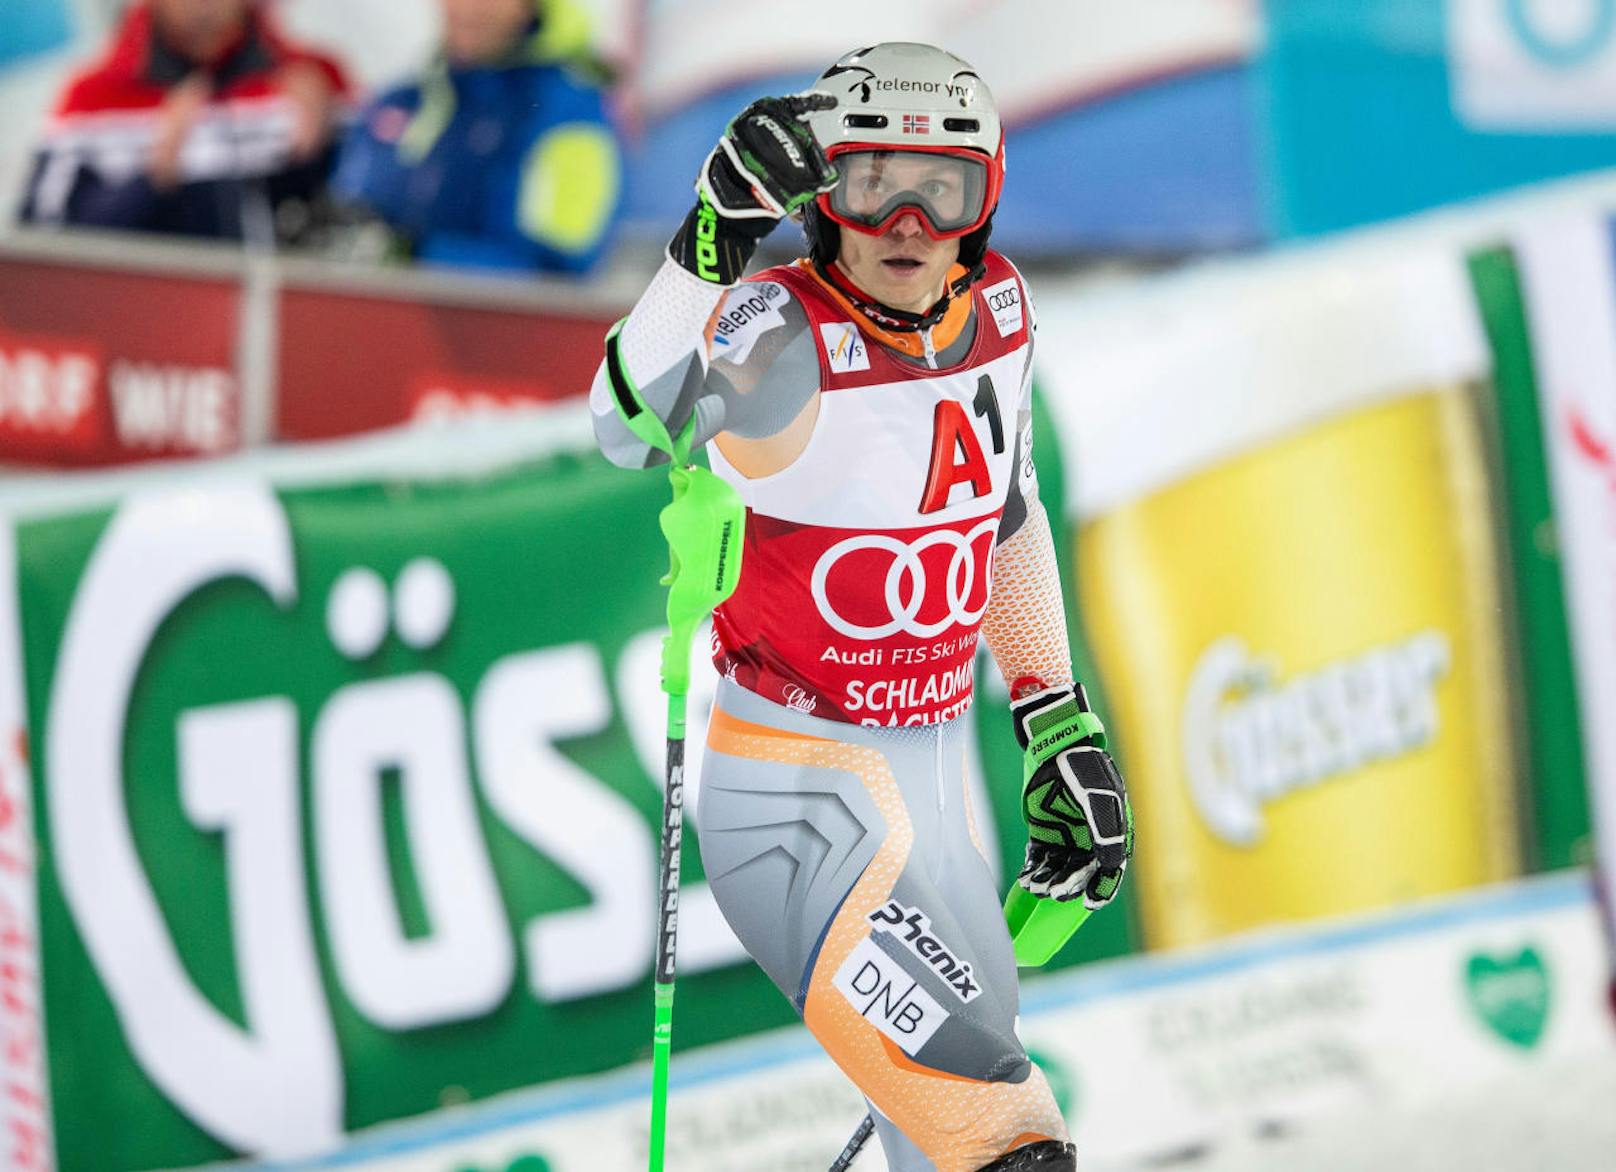 Nach dem Kitzbühel-Wochenende steigt traditionell das Slalom-Nightrace in Schladming. Sieger: Henrik Kristoffersen aus Norwegen. Marco Schwarz schied als Halbzeit-Führender in der Entscheidung aus. Bester Österreicher wurde Michael Matt als 15.